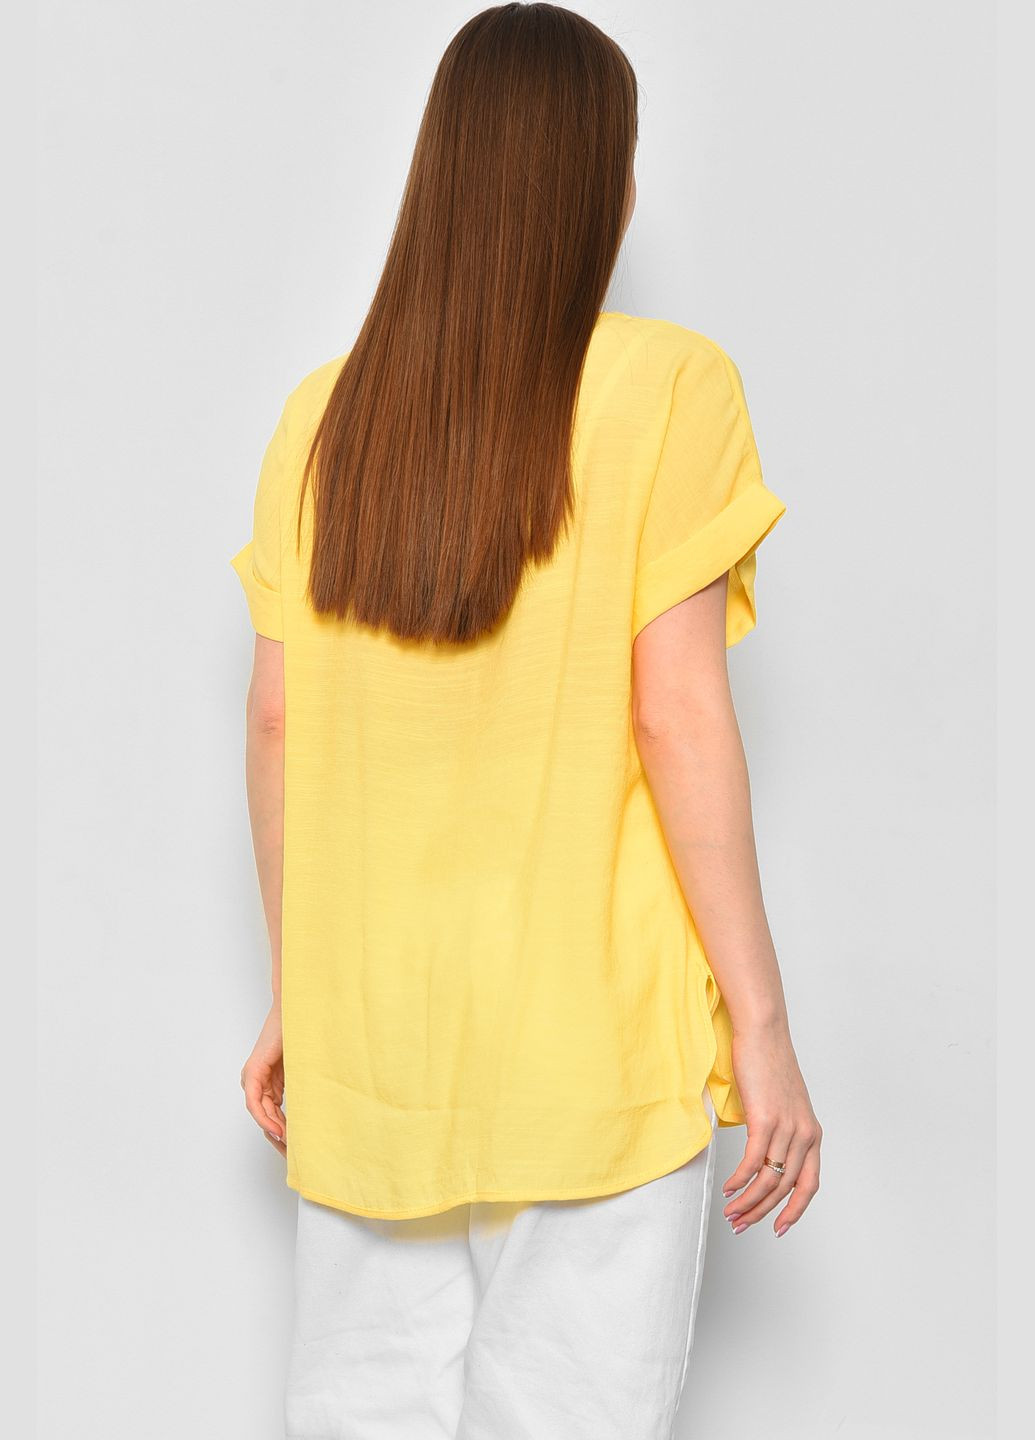 Желтая летняя футболка женская полубатальная желтого цвета Let's Shop